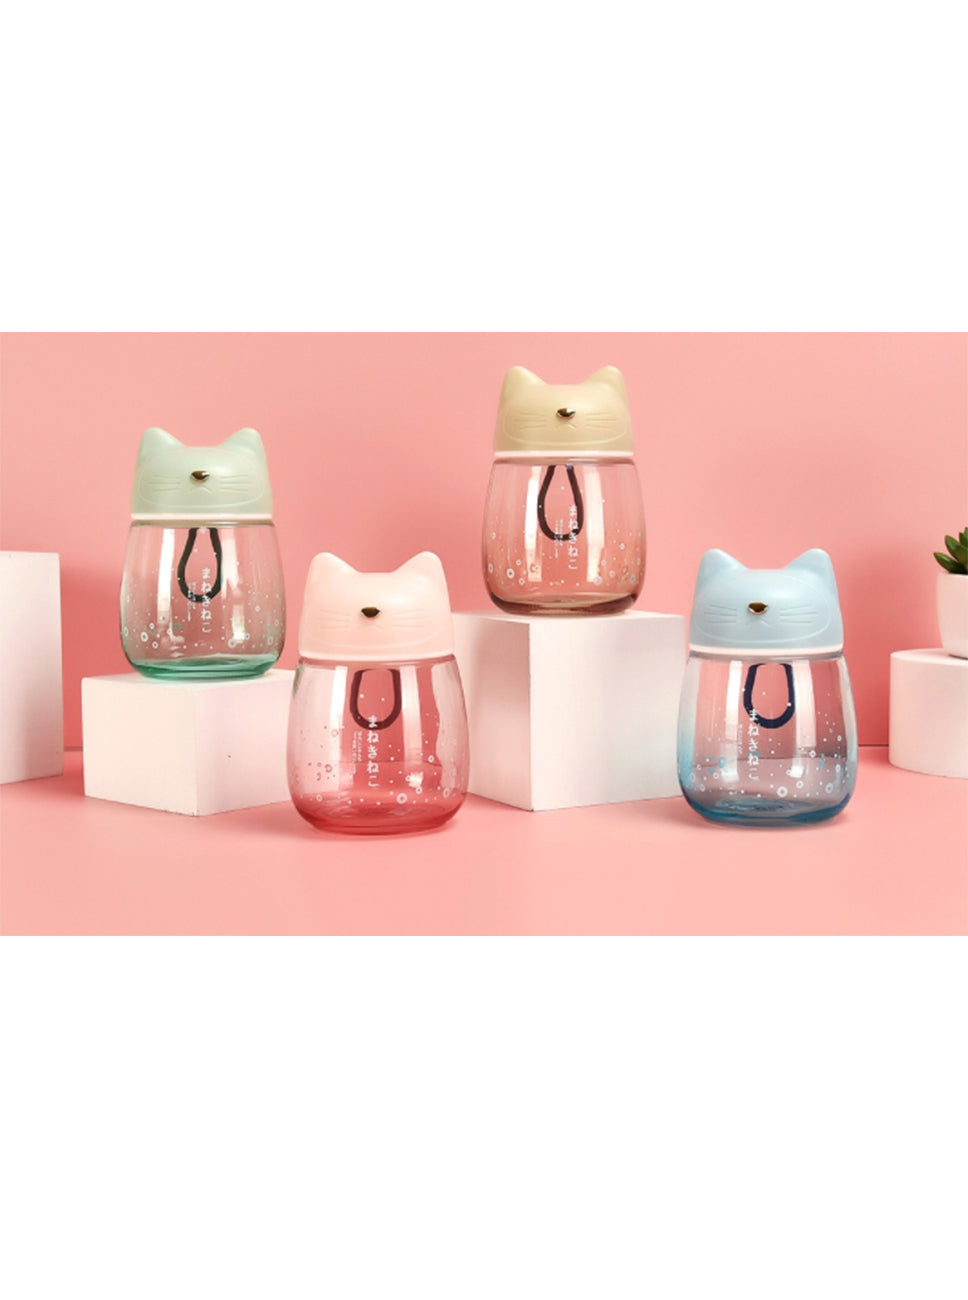 【客製化】閃亮貓貓玻璃杯 | 禮品、贈品專業客製禮贈品顧問 | 禮品、贈品專屬客製禮贈品專家